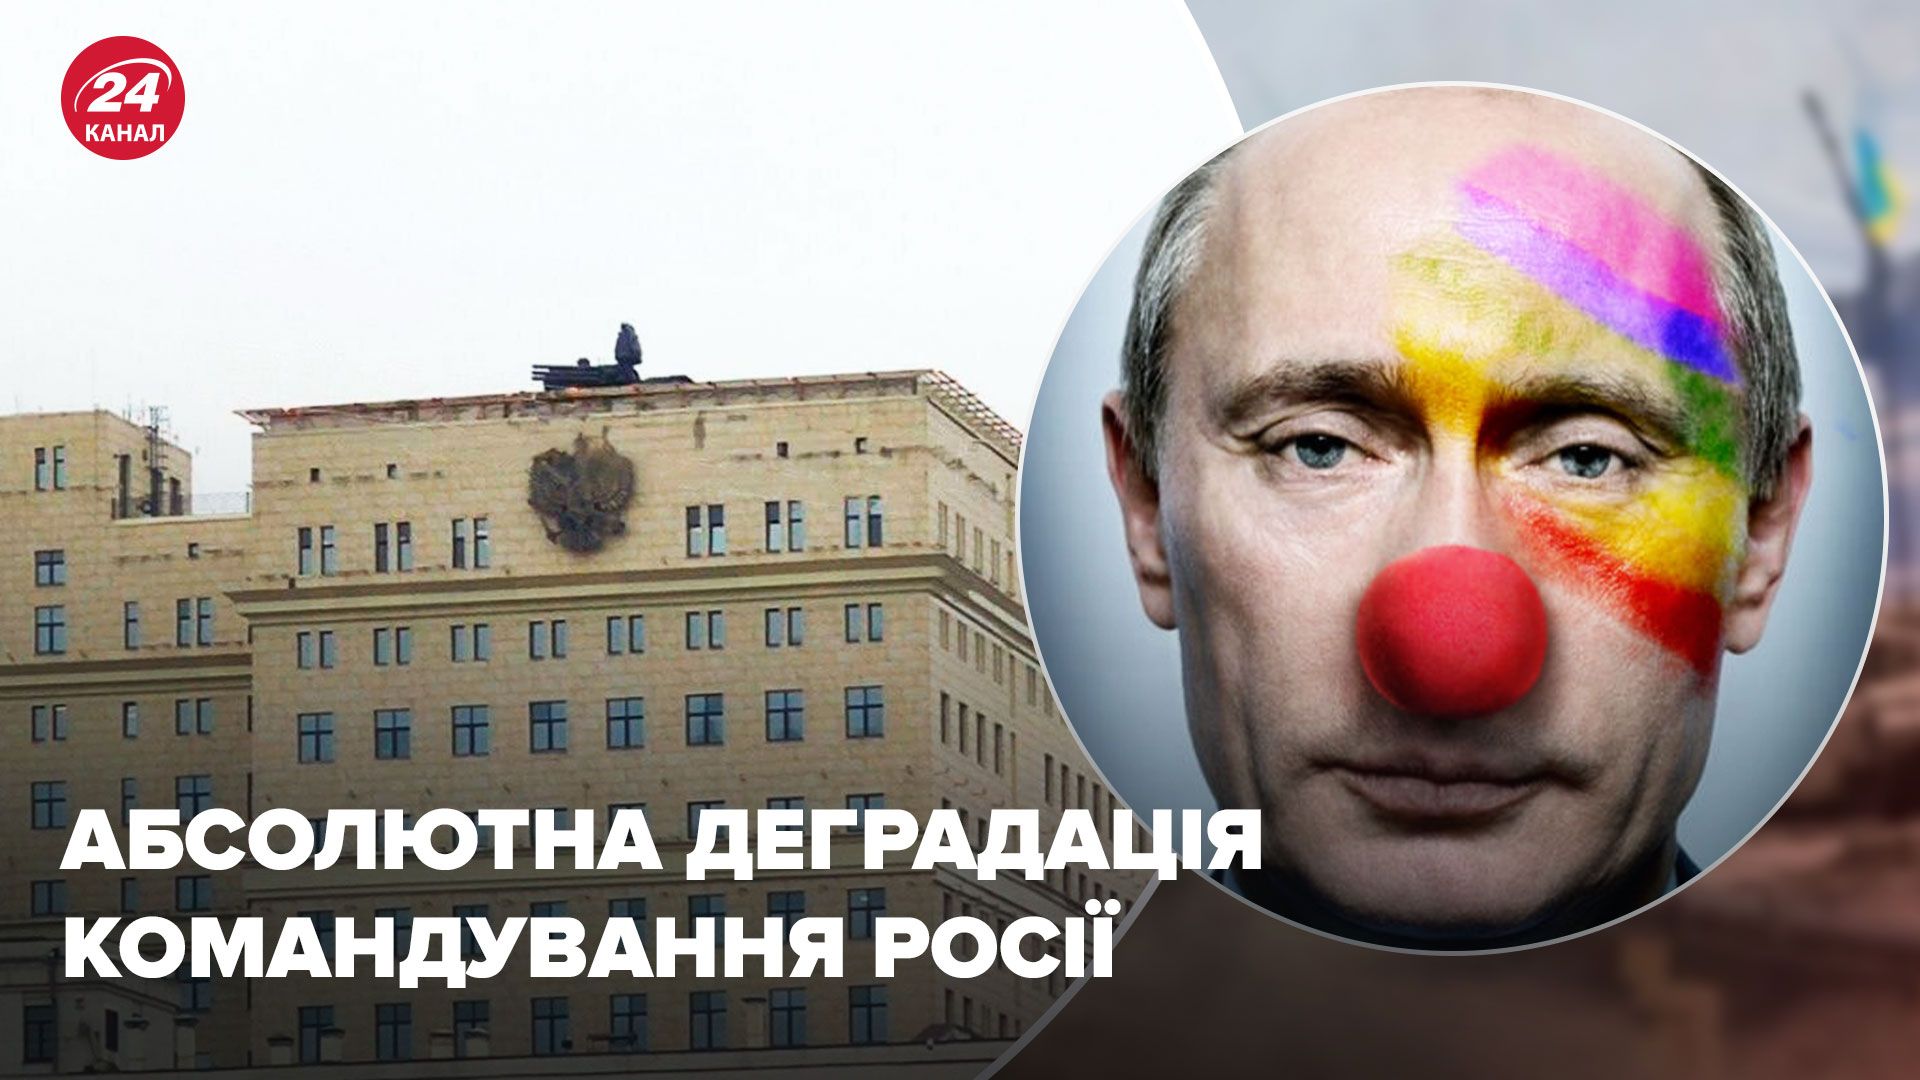 ПВО на крышах в Москве - российский оппозиционер высмеял идею Кремля - 24 Канал